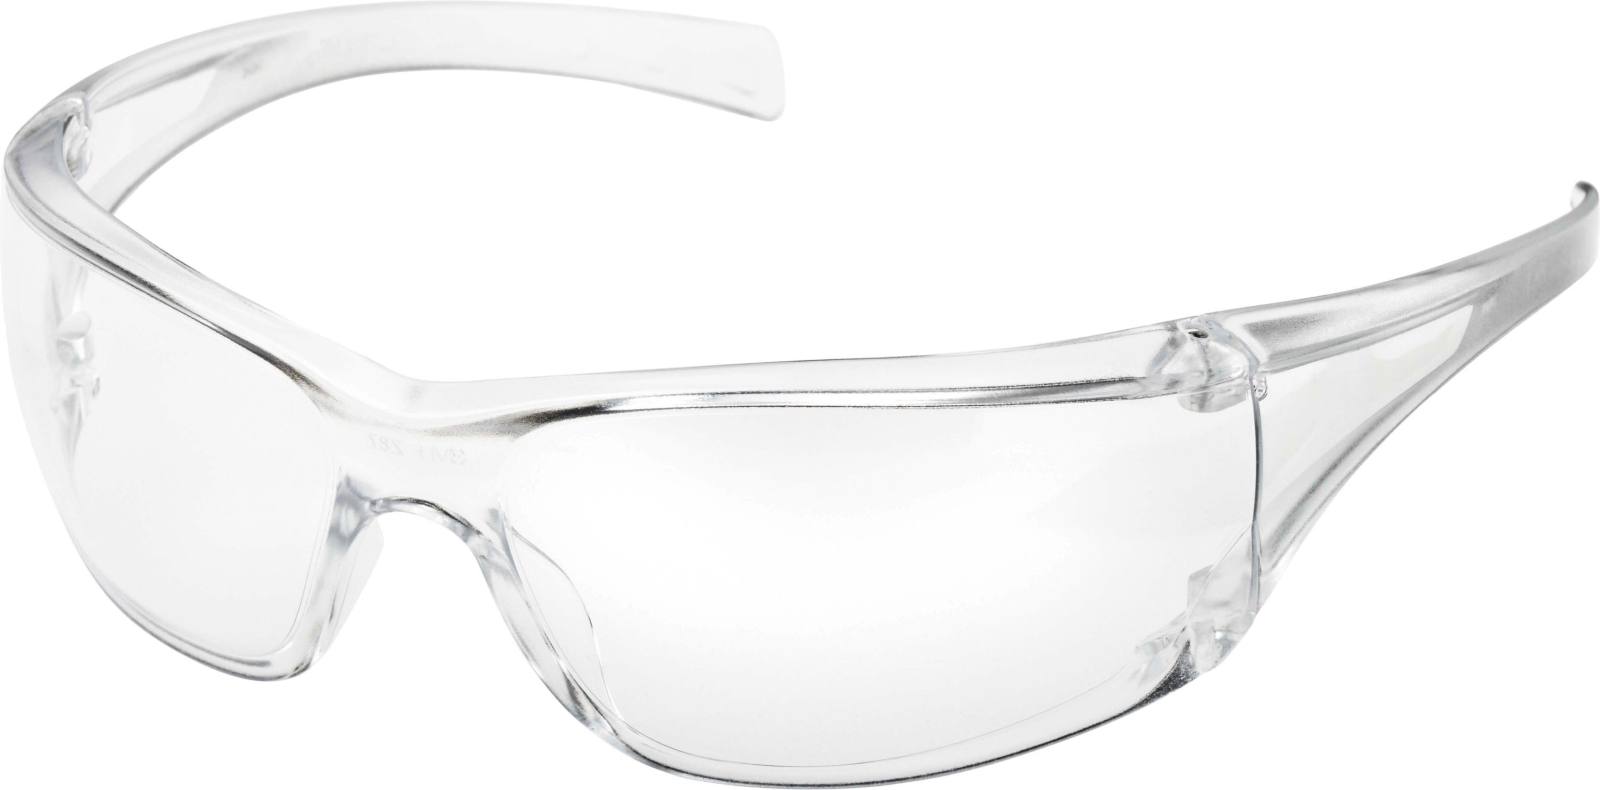 3M Virtua Schutzbrille mit Antikratz-Beschichtung, transparenten Gläsern, 71500-00001